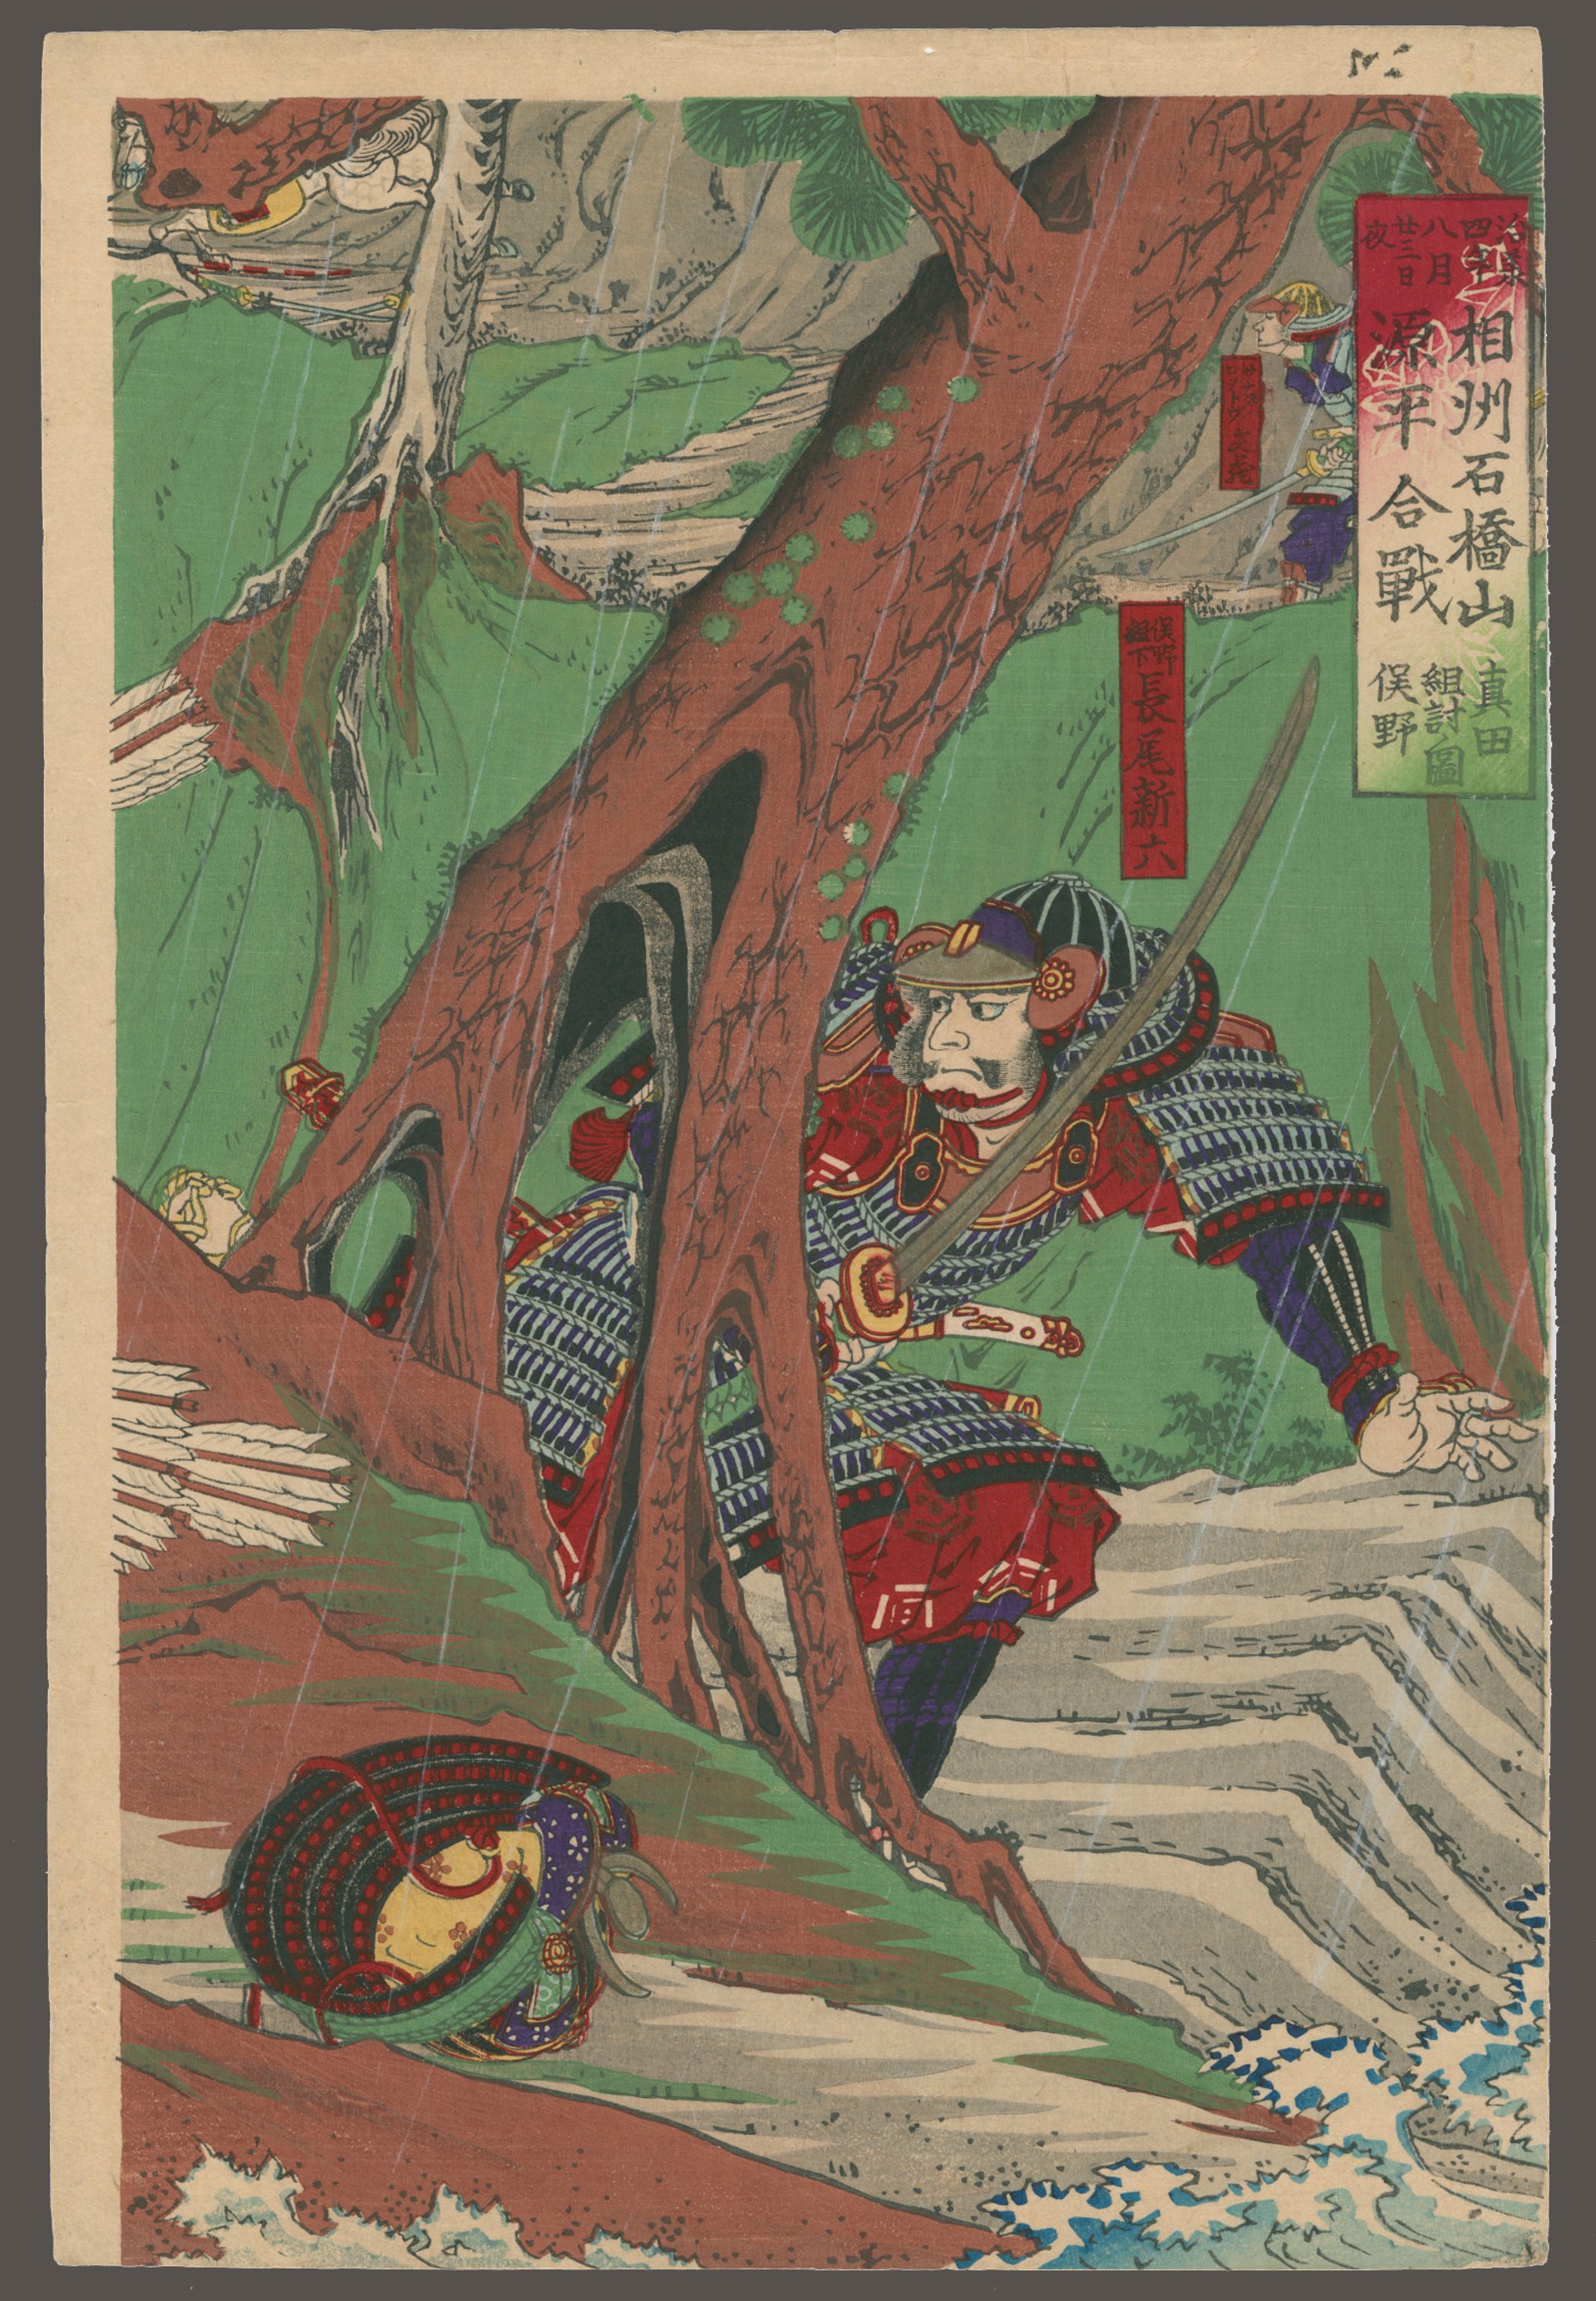 Sanada no Yoichi aids Yoritomo no Minamoto in Winning the Battle of Ishibashiyama in 1184 by Yoshifuji